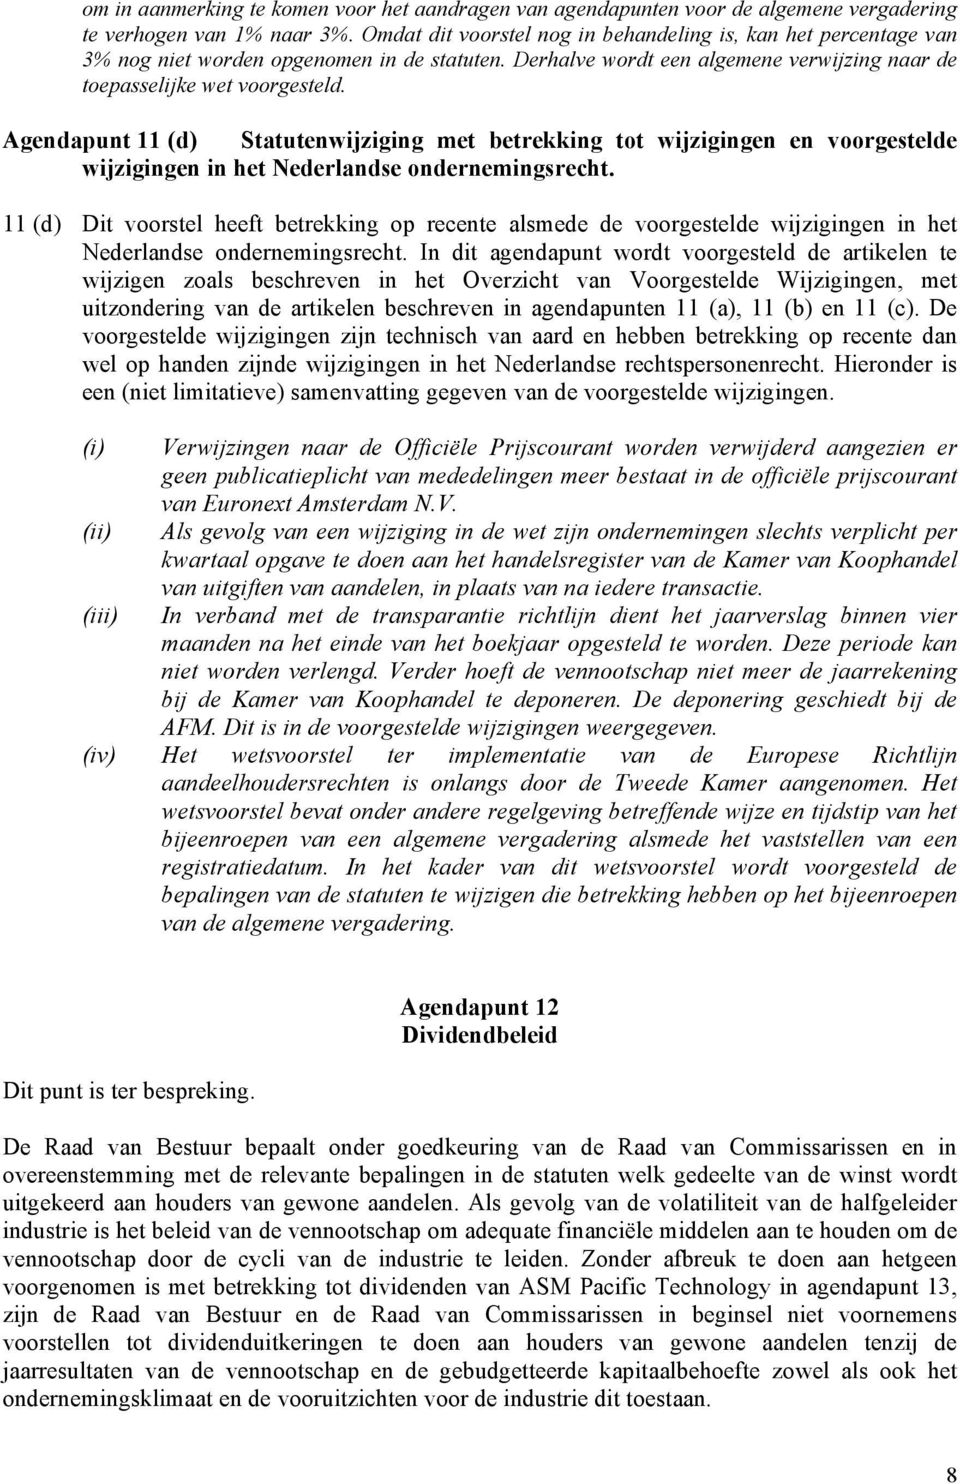 Agendapunt 11 (d) Statutenwijziging met betrekking tot wijzigingen en voorgestelde wijzigingen in het Nederlandse ondernemingsrecht.